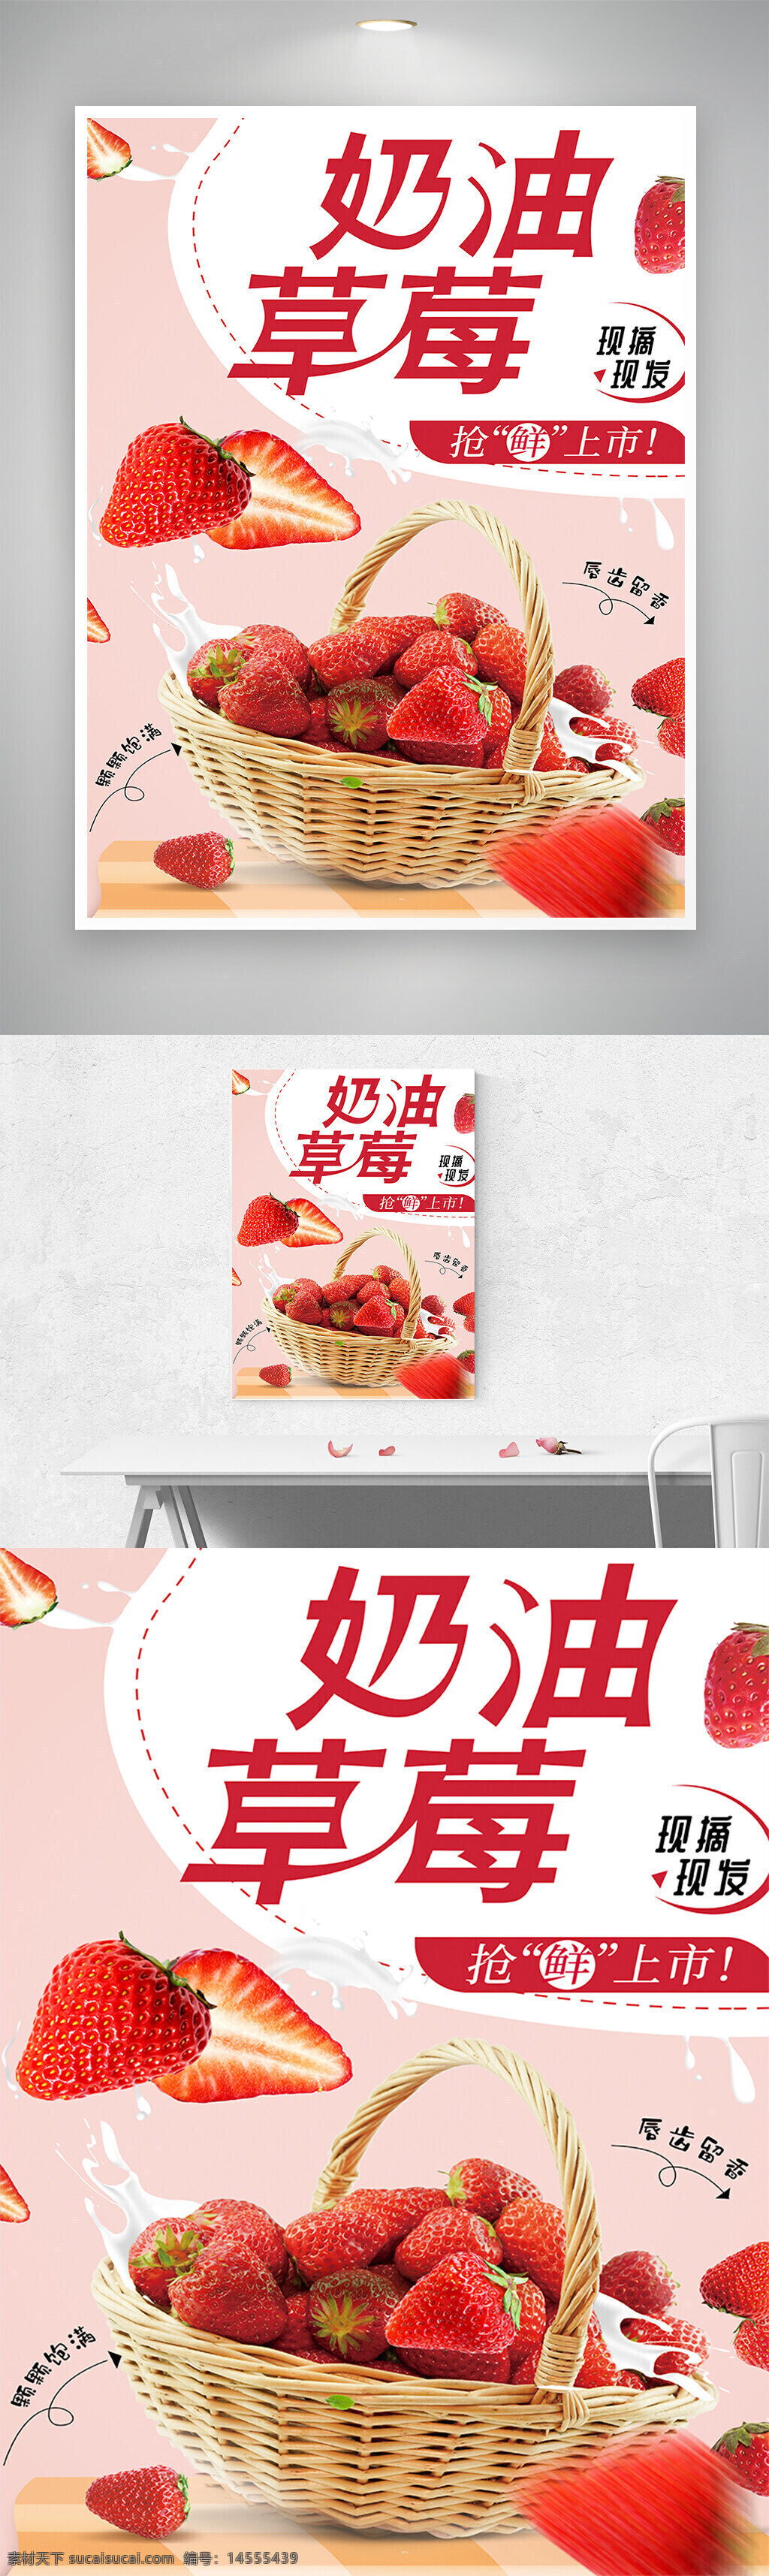 红色 草莓 水果 促销 海报